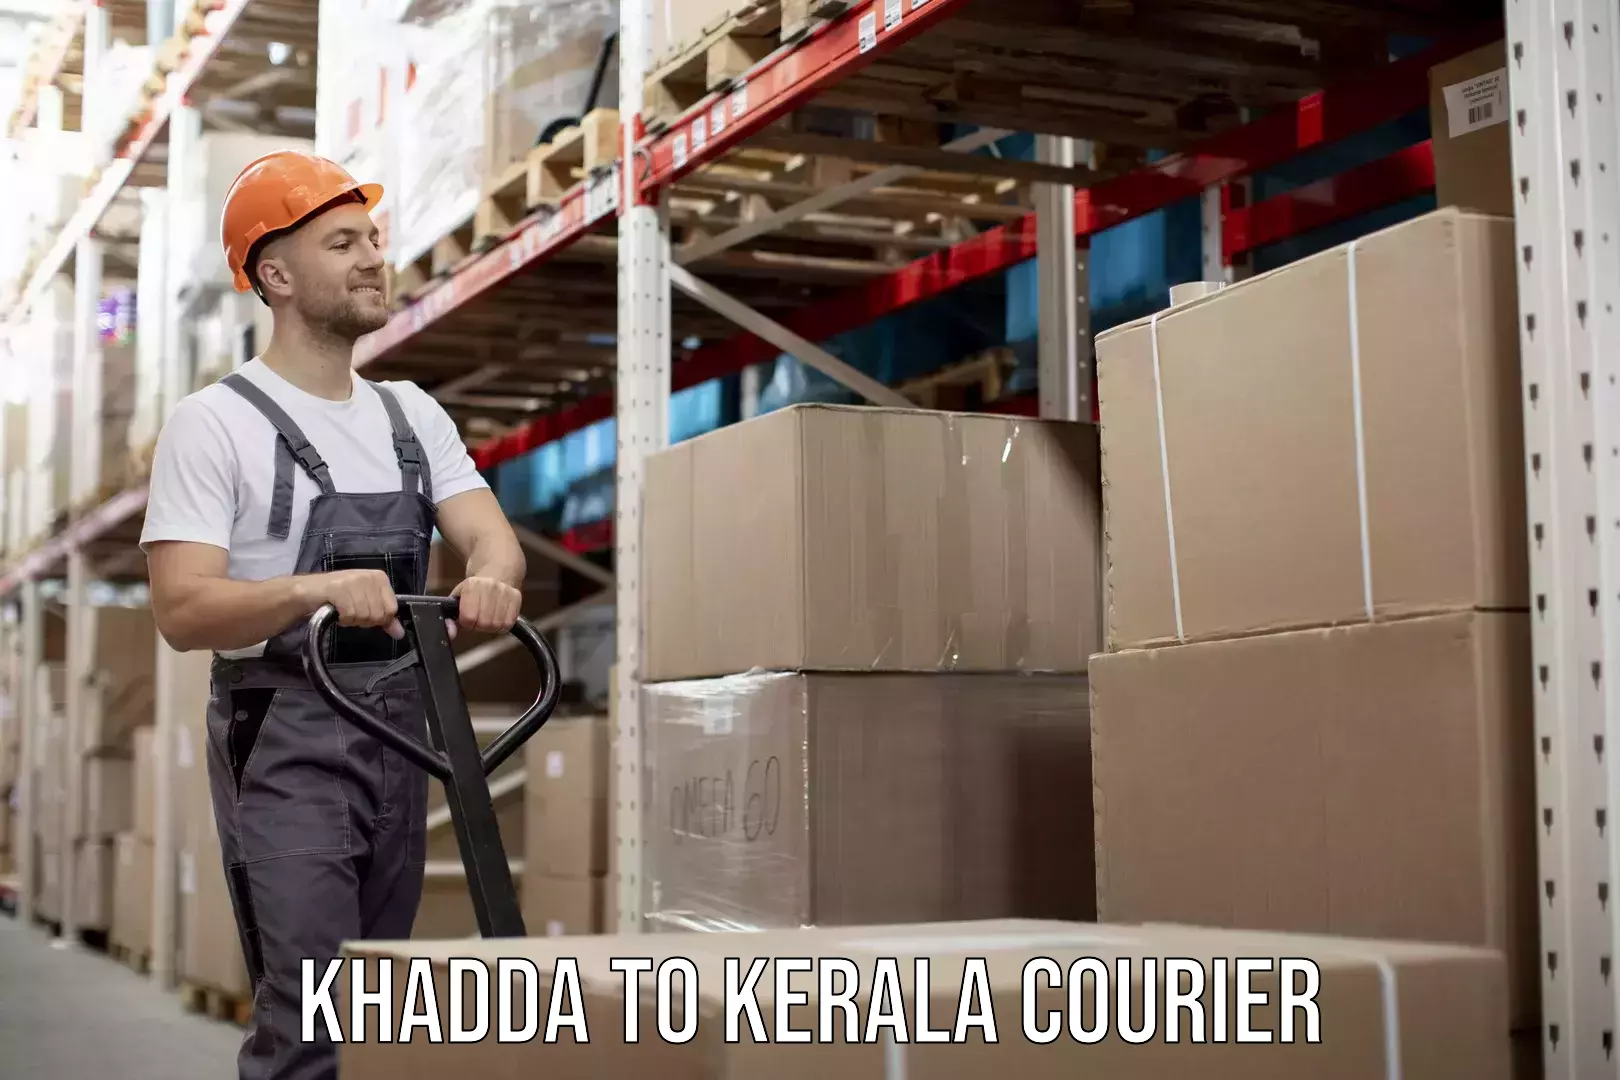 Moving and packing experts Khadda to Kerala